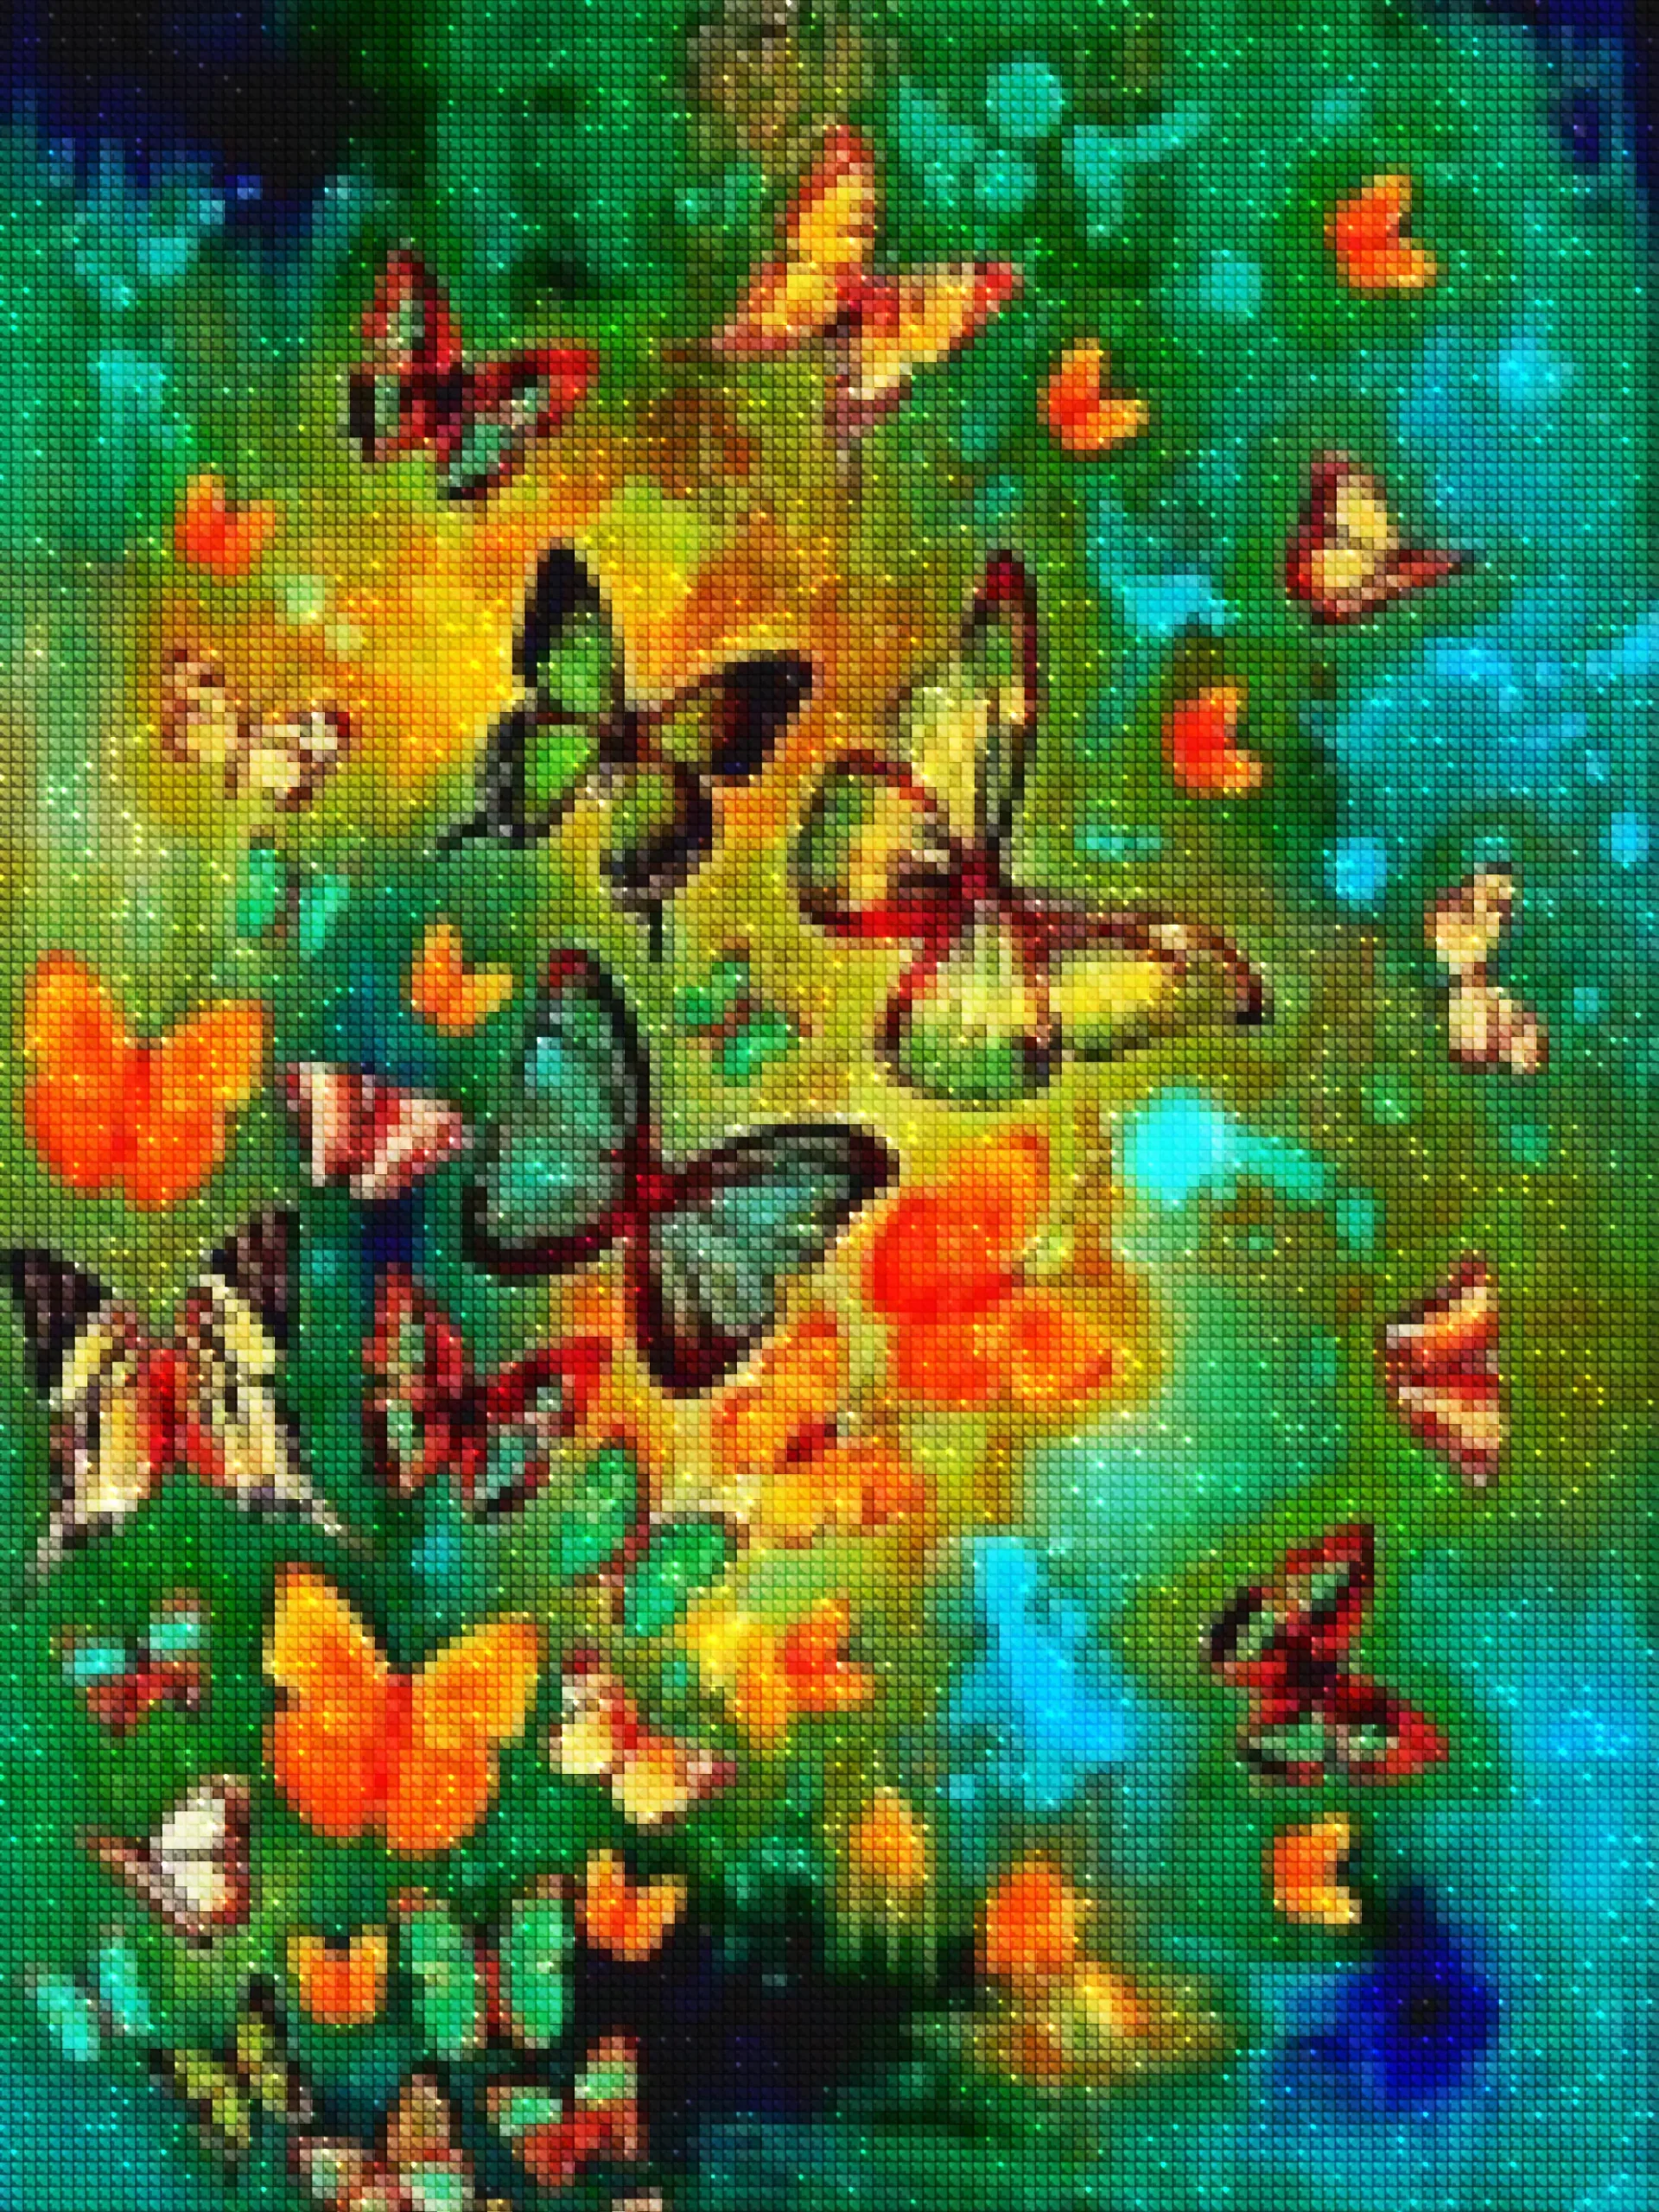 diamenty-wizard-diament-painting-kits-Nature-Butterfly-Migracja motyli w kolorowym krajobrazie-diamonds.webp